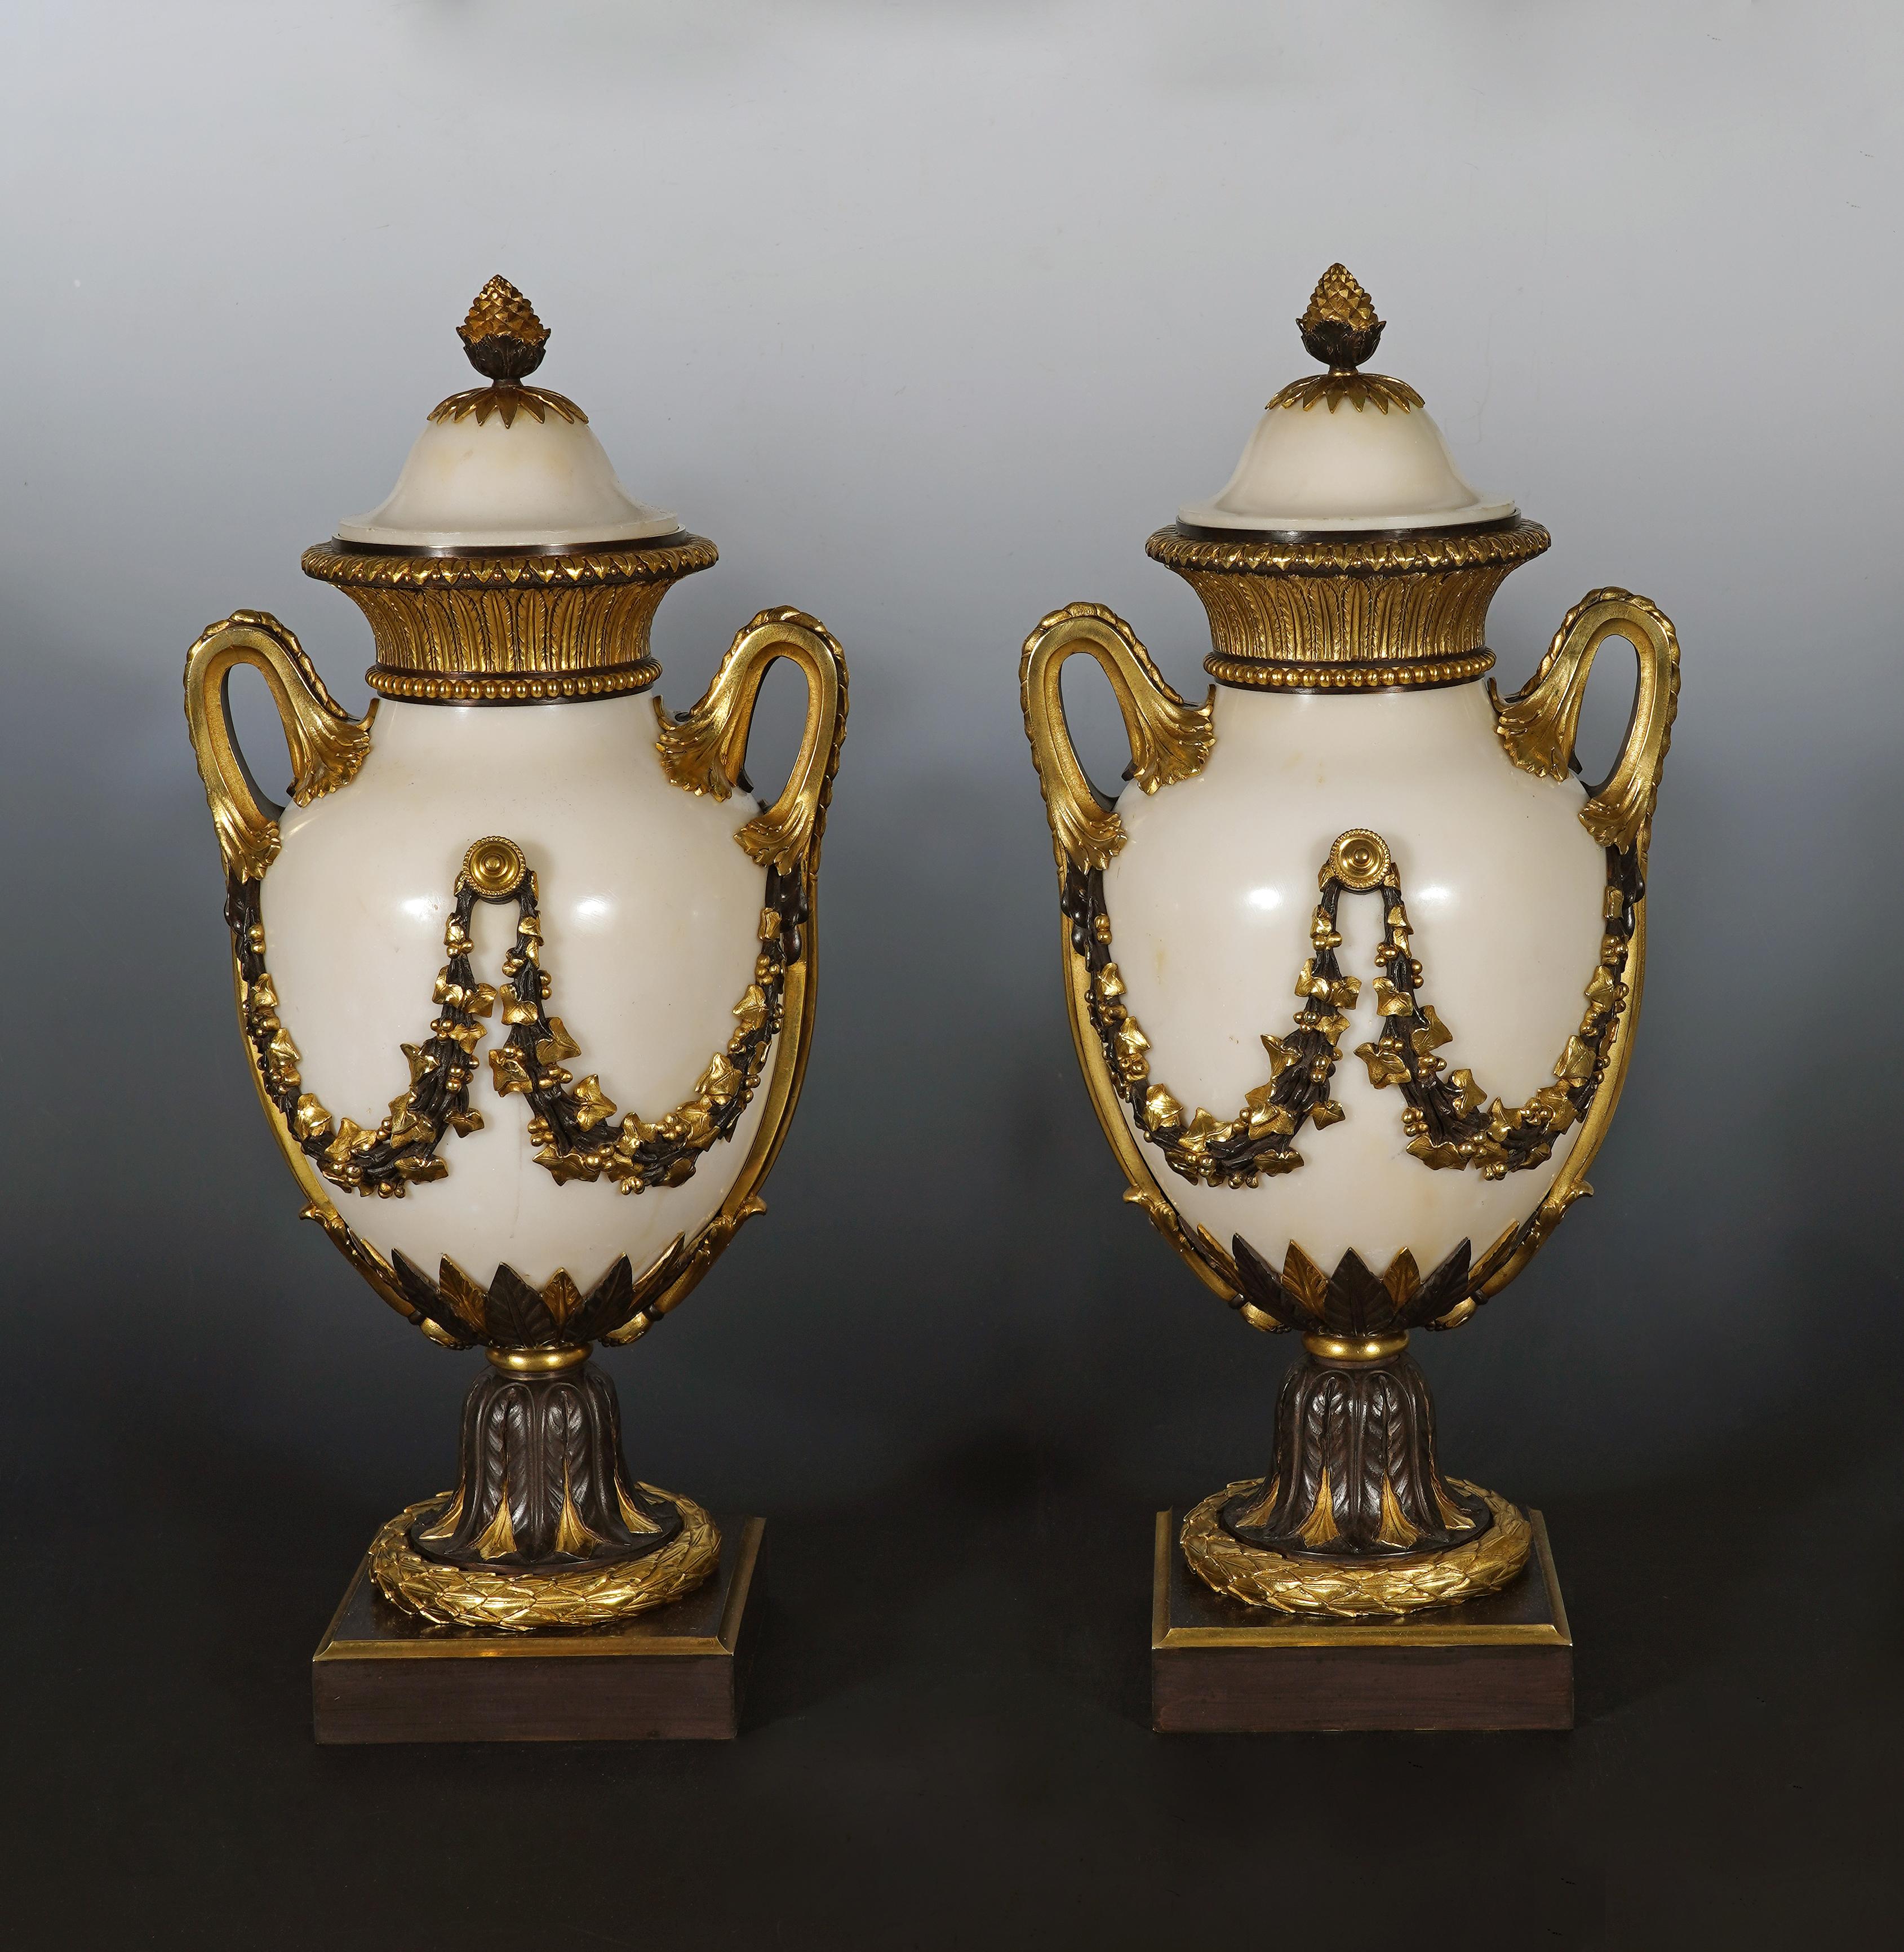 Belle paire de cassolettes d'inspiration Louis XVI, de forme balustre, en marbre blanc, enrichie d'une élégante monture en bronze à double patine. Le couvercle est surmonté d'une poignée en forme de graine. 
Le corps est décoré de guirlandes de